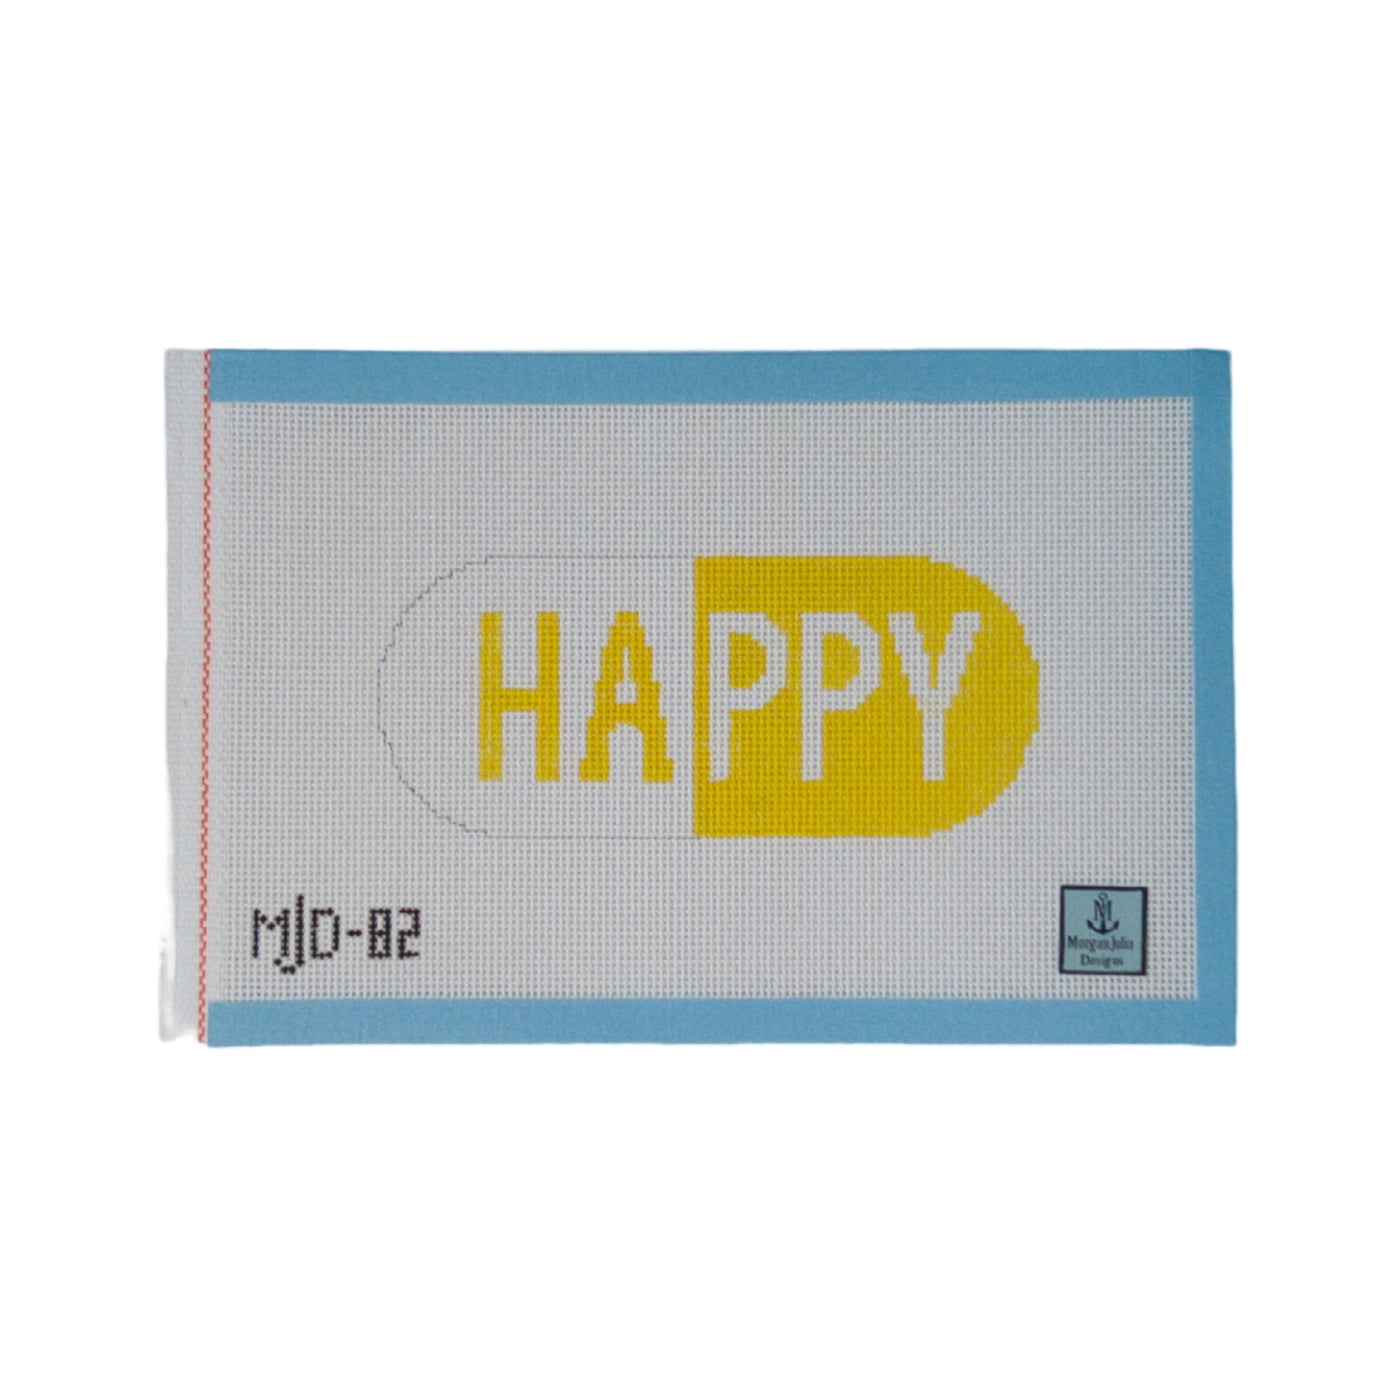 Happy Pill